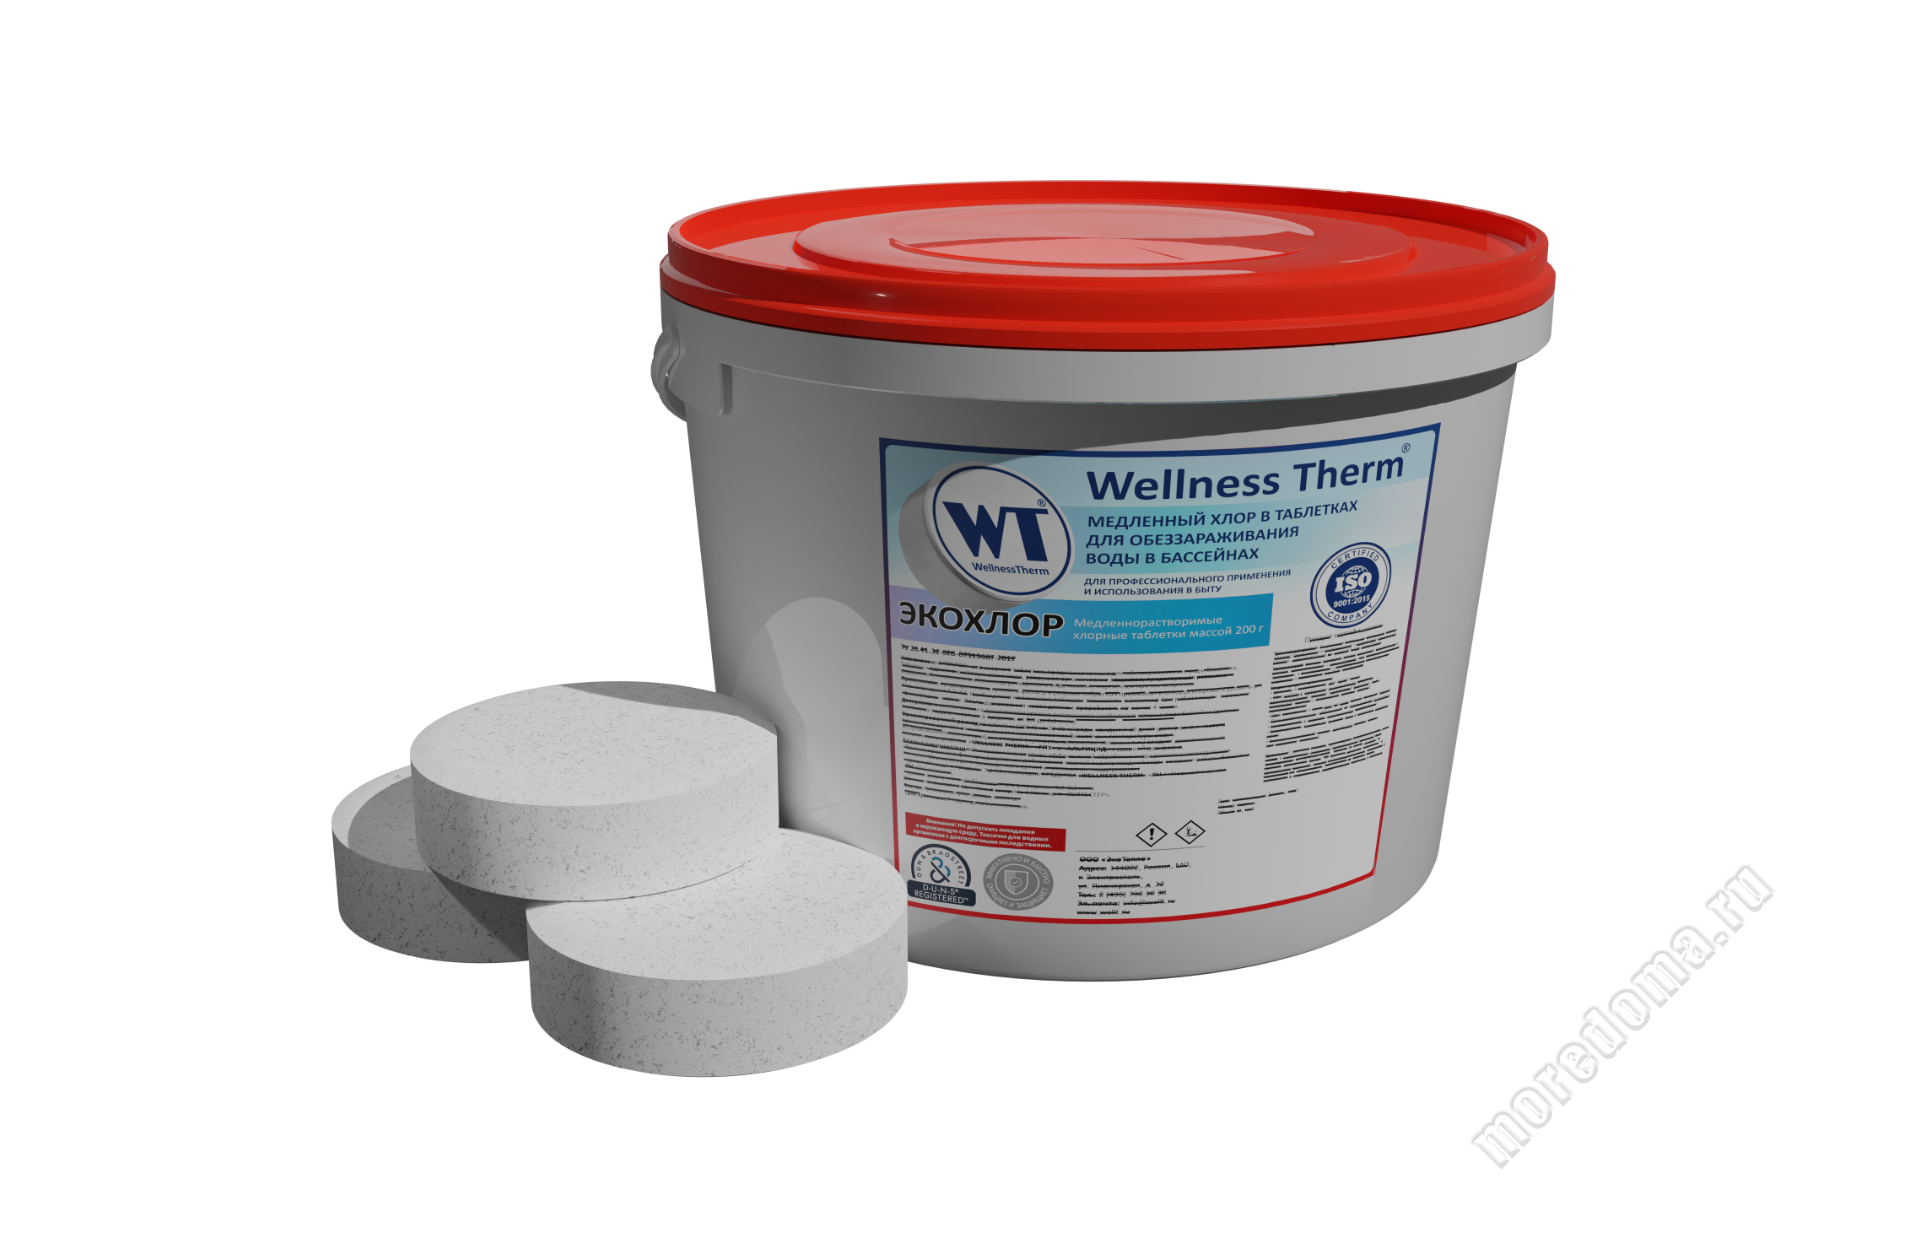 ЭКОХЛОР  Wellness Therm медленно растворимые хлорные таблетки 200г (5 кг), арт. 877437